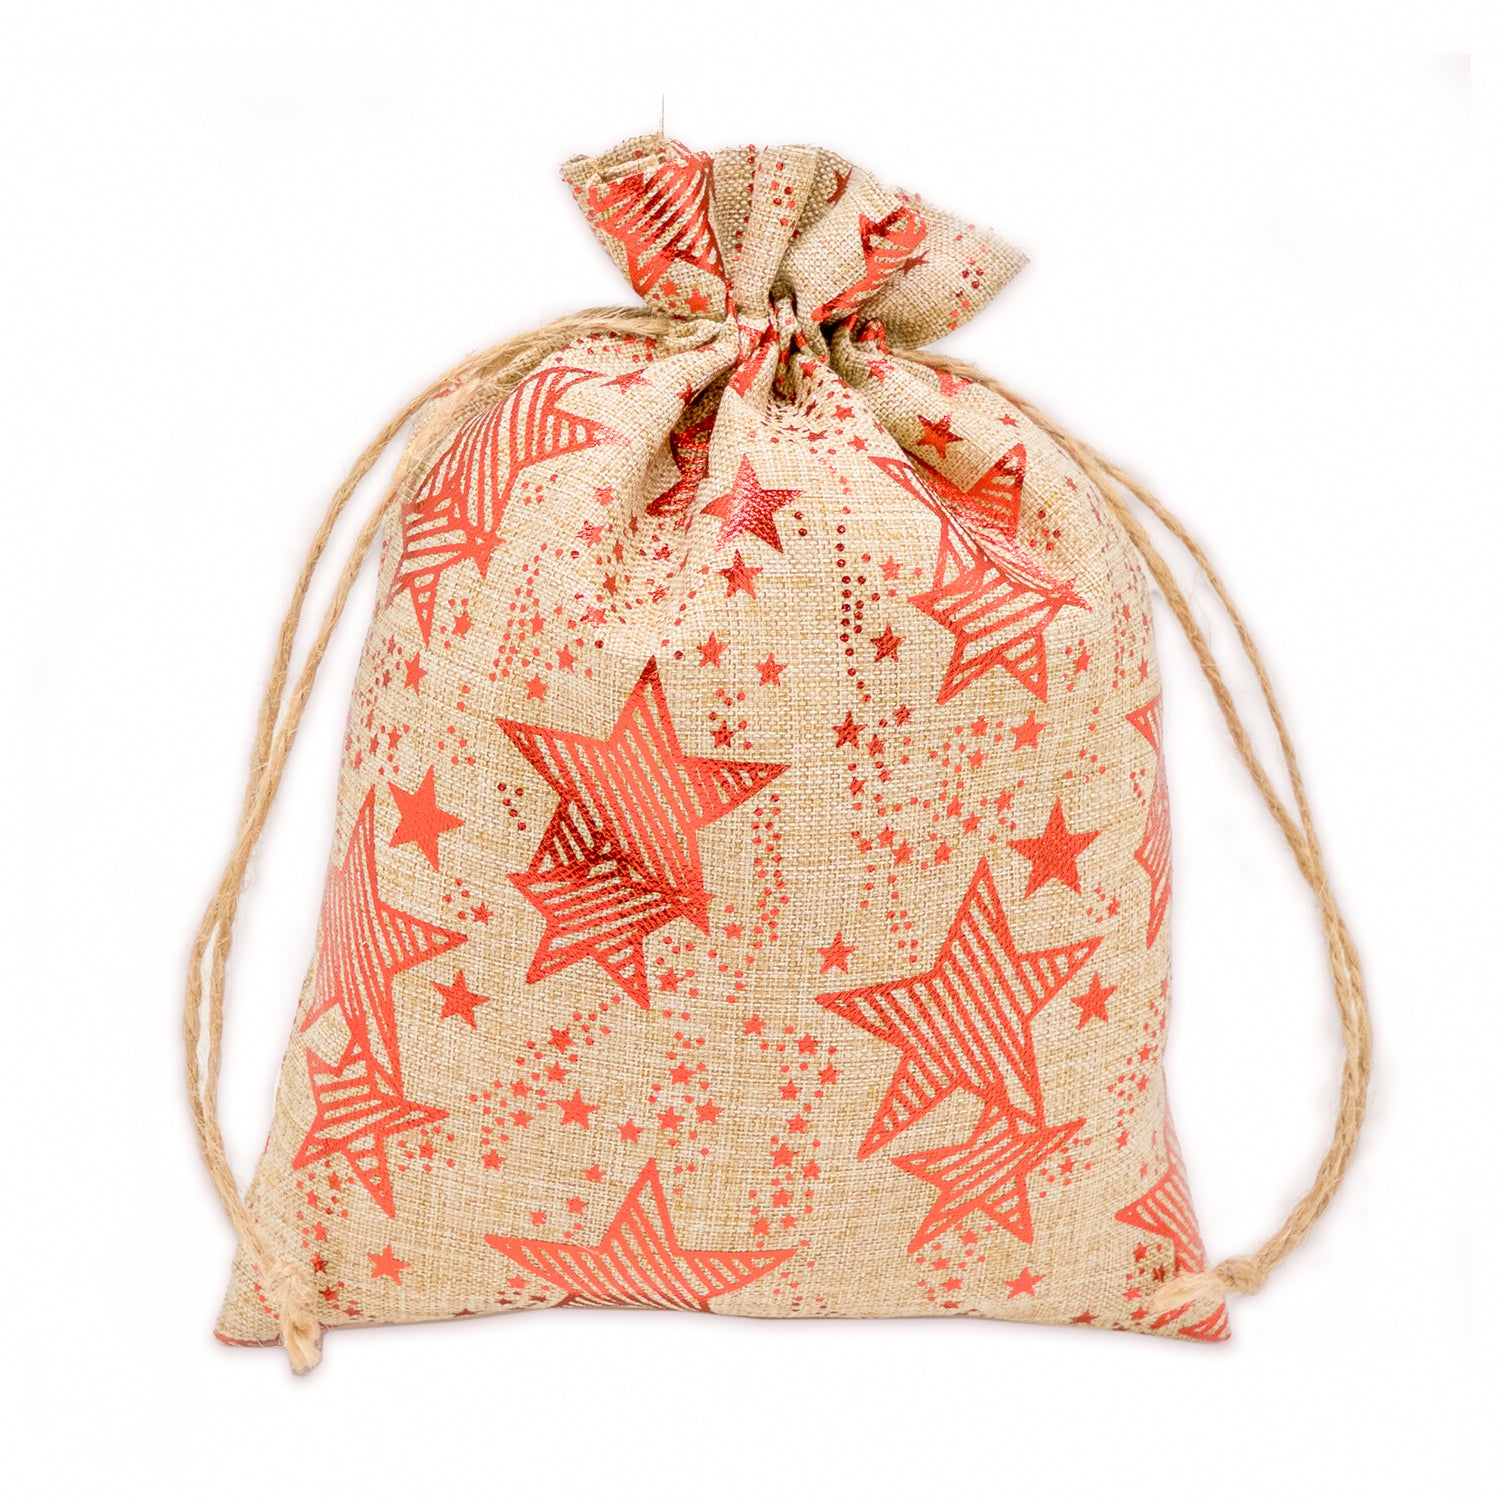 12" x 16" Jute Burlap Red Star Drawstring Gift Bags